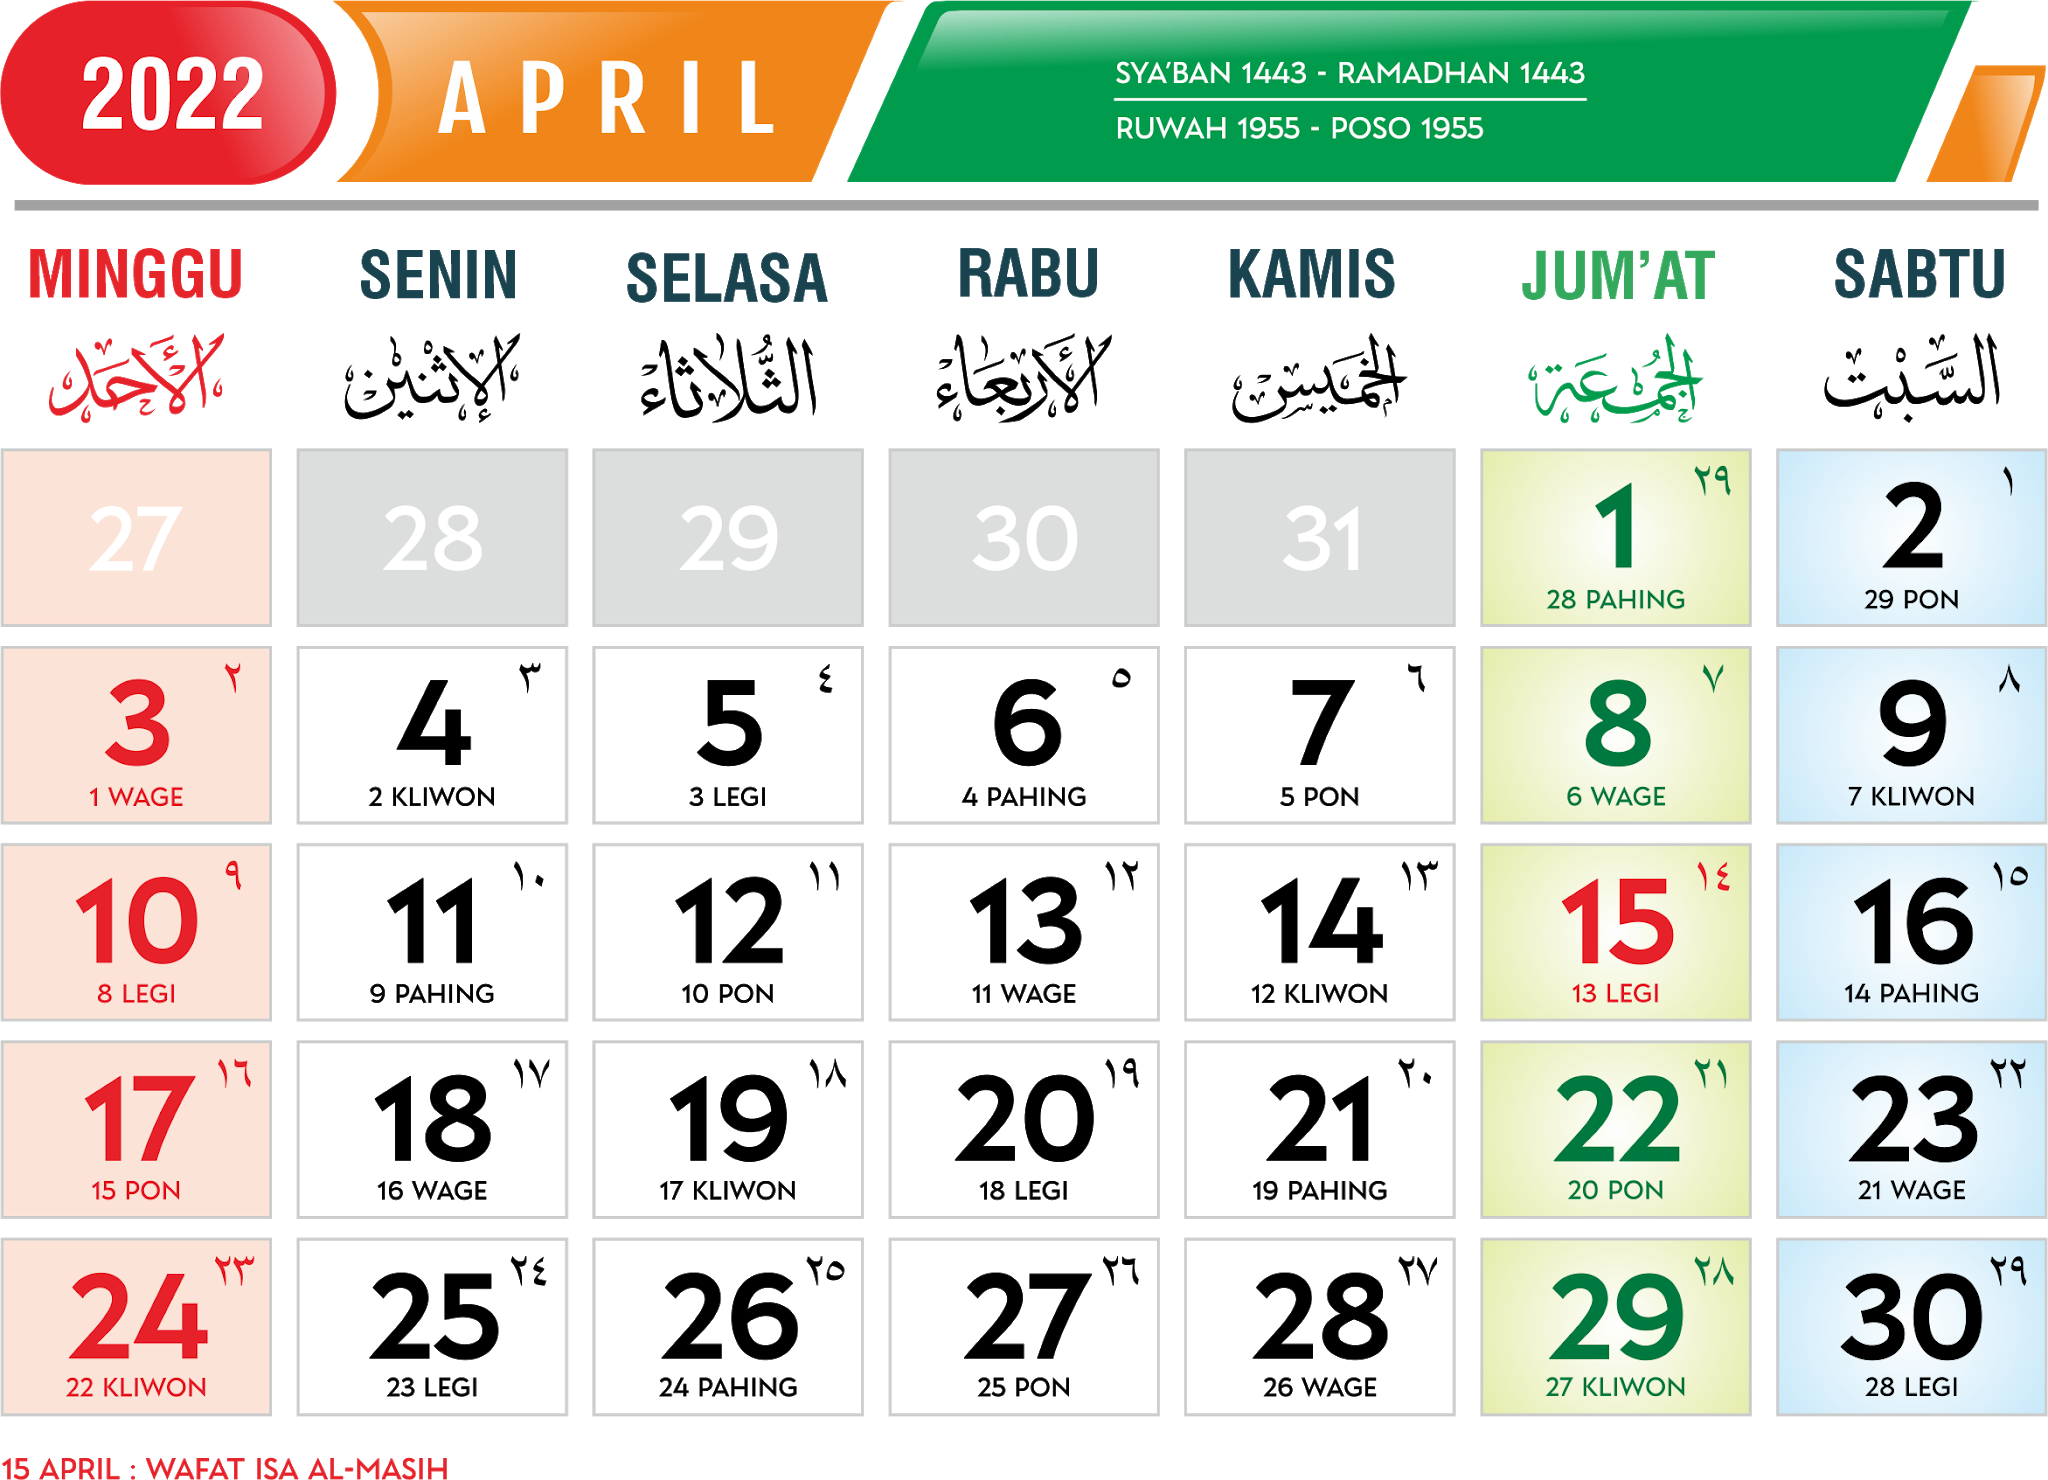 April jawa 1 2022 kalender Kalender Bulan